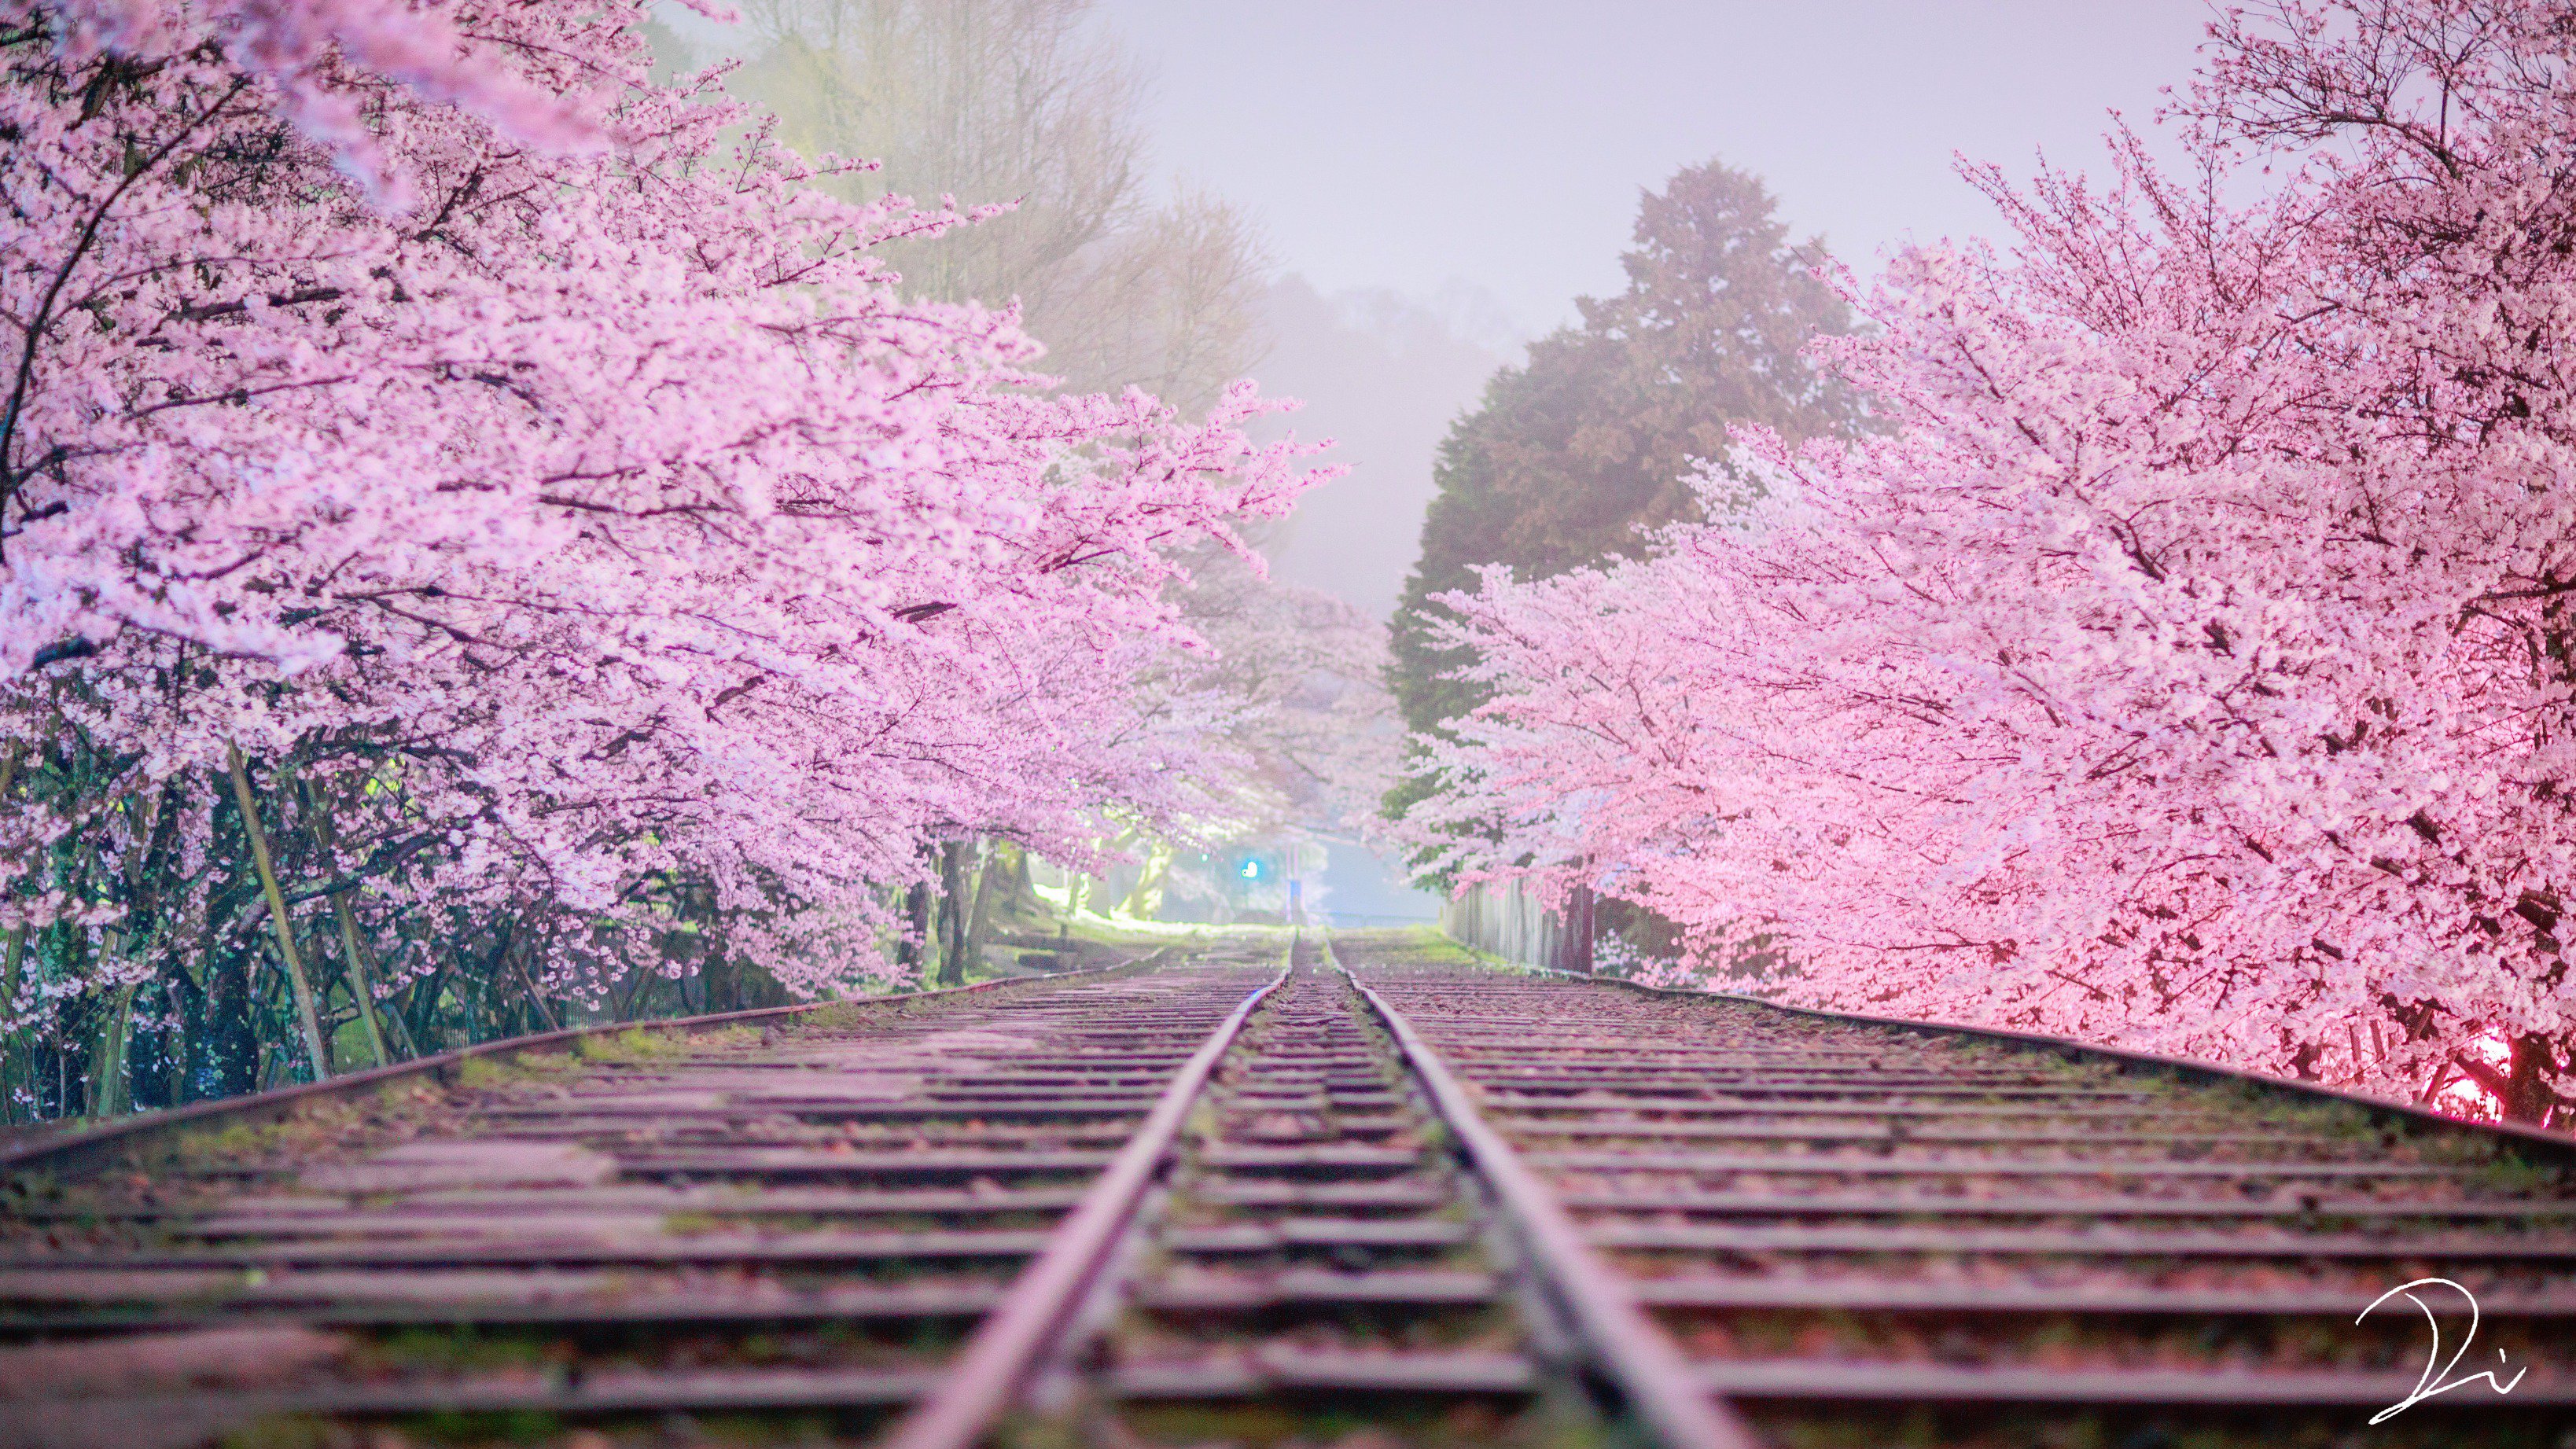 Twitter 上的 うさだぬ 京都写真家 夢桜 まるで御伽噺に出てくるような 幻想的な桜並木 その真ん中を走る線路は桃源郷へと続いているかのようでした これ 昼間のように見えますが実は夜なんです 霧雨の降る真夜中に夢中で撮り続けました 京都夜桜